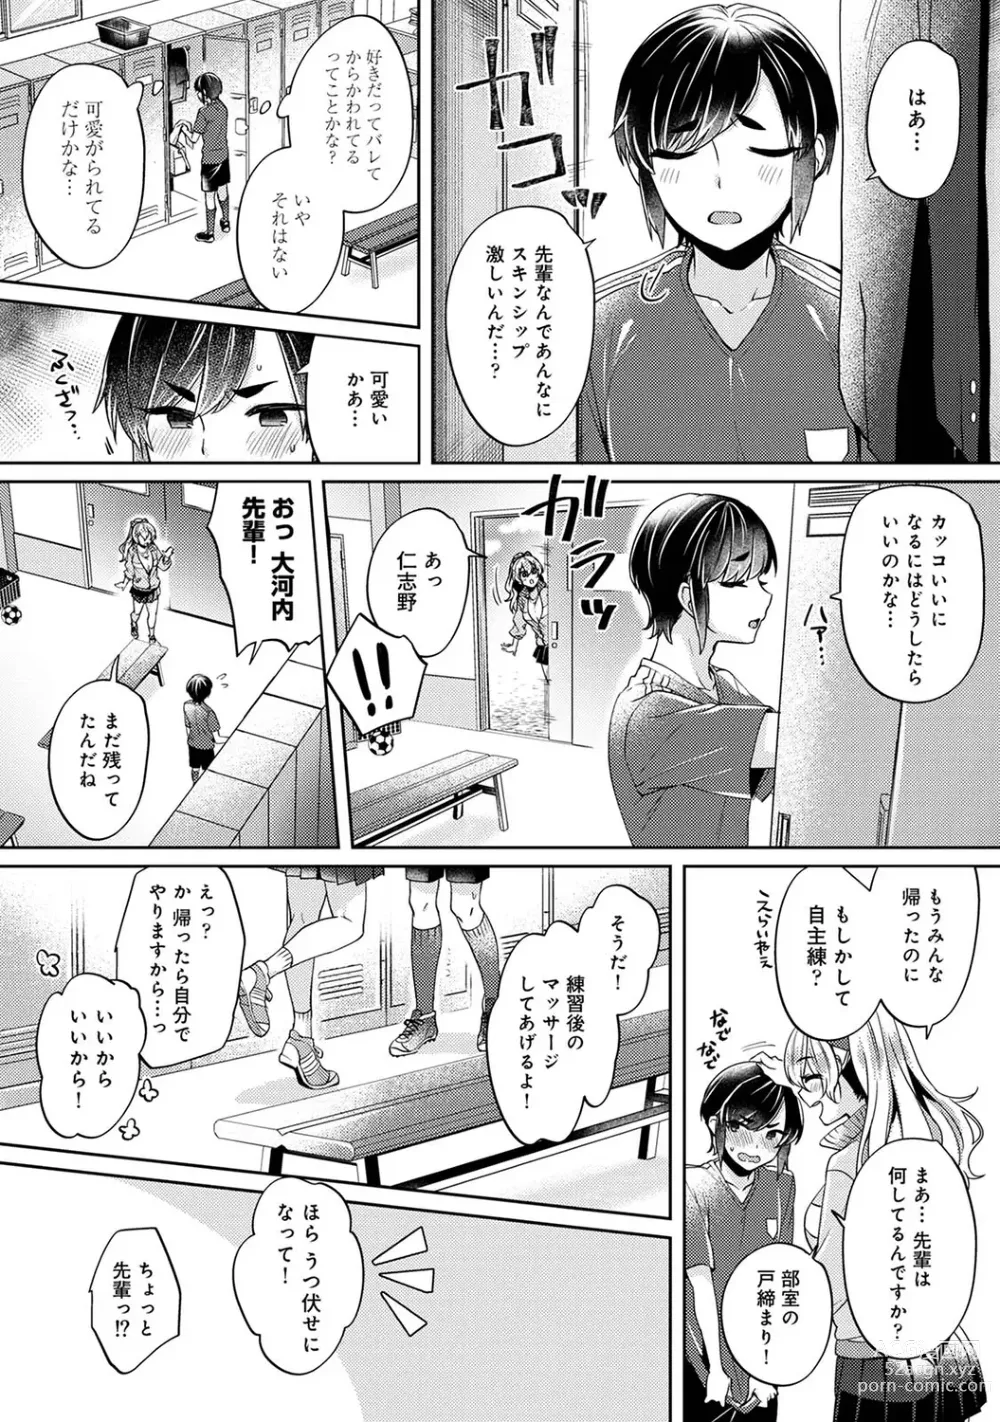 Page 7 of manga Suki Suki Diary